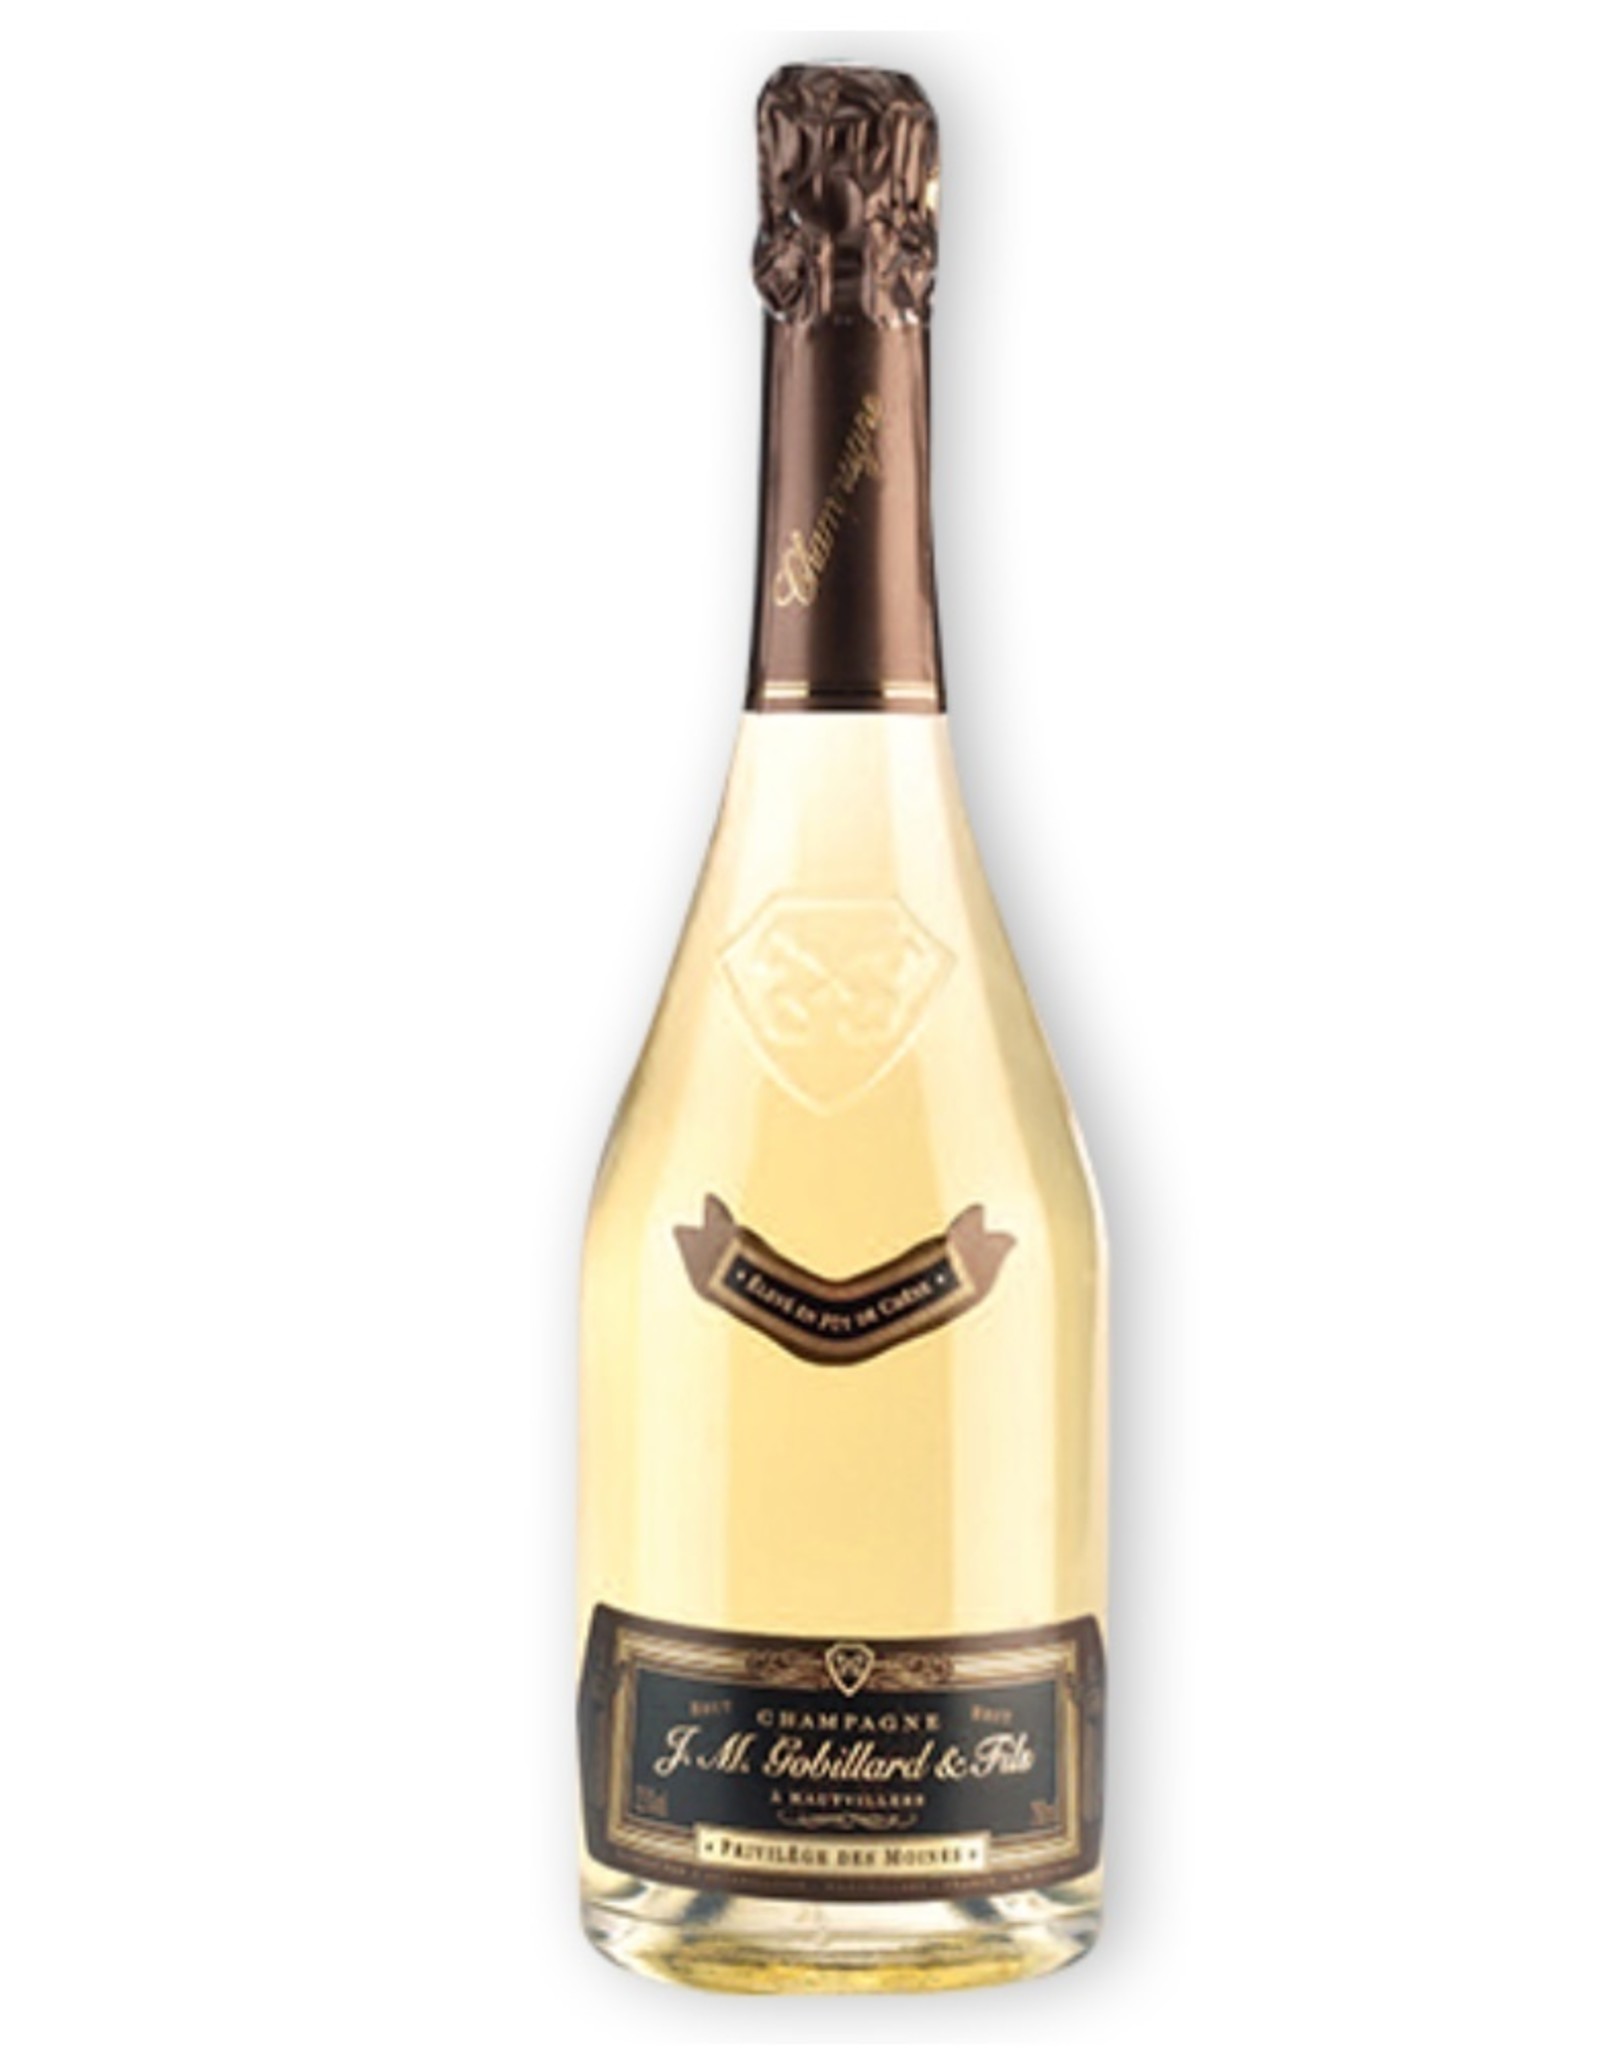 Champagne Gobillard Privilege des Moines NV